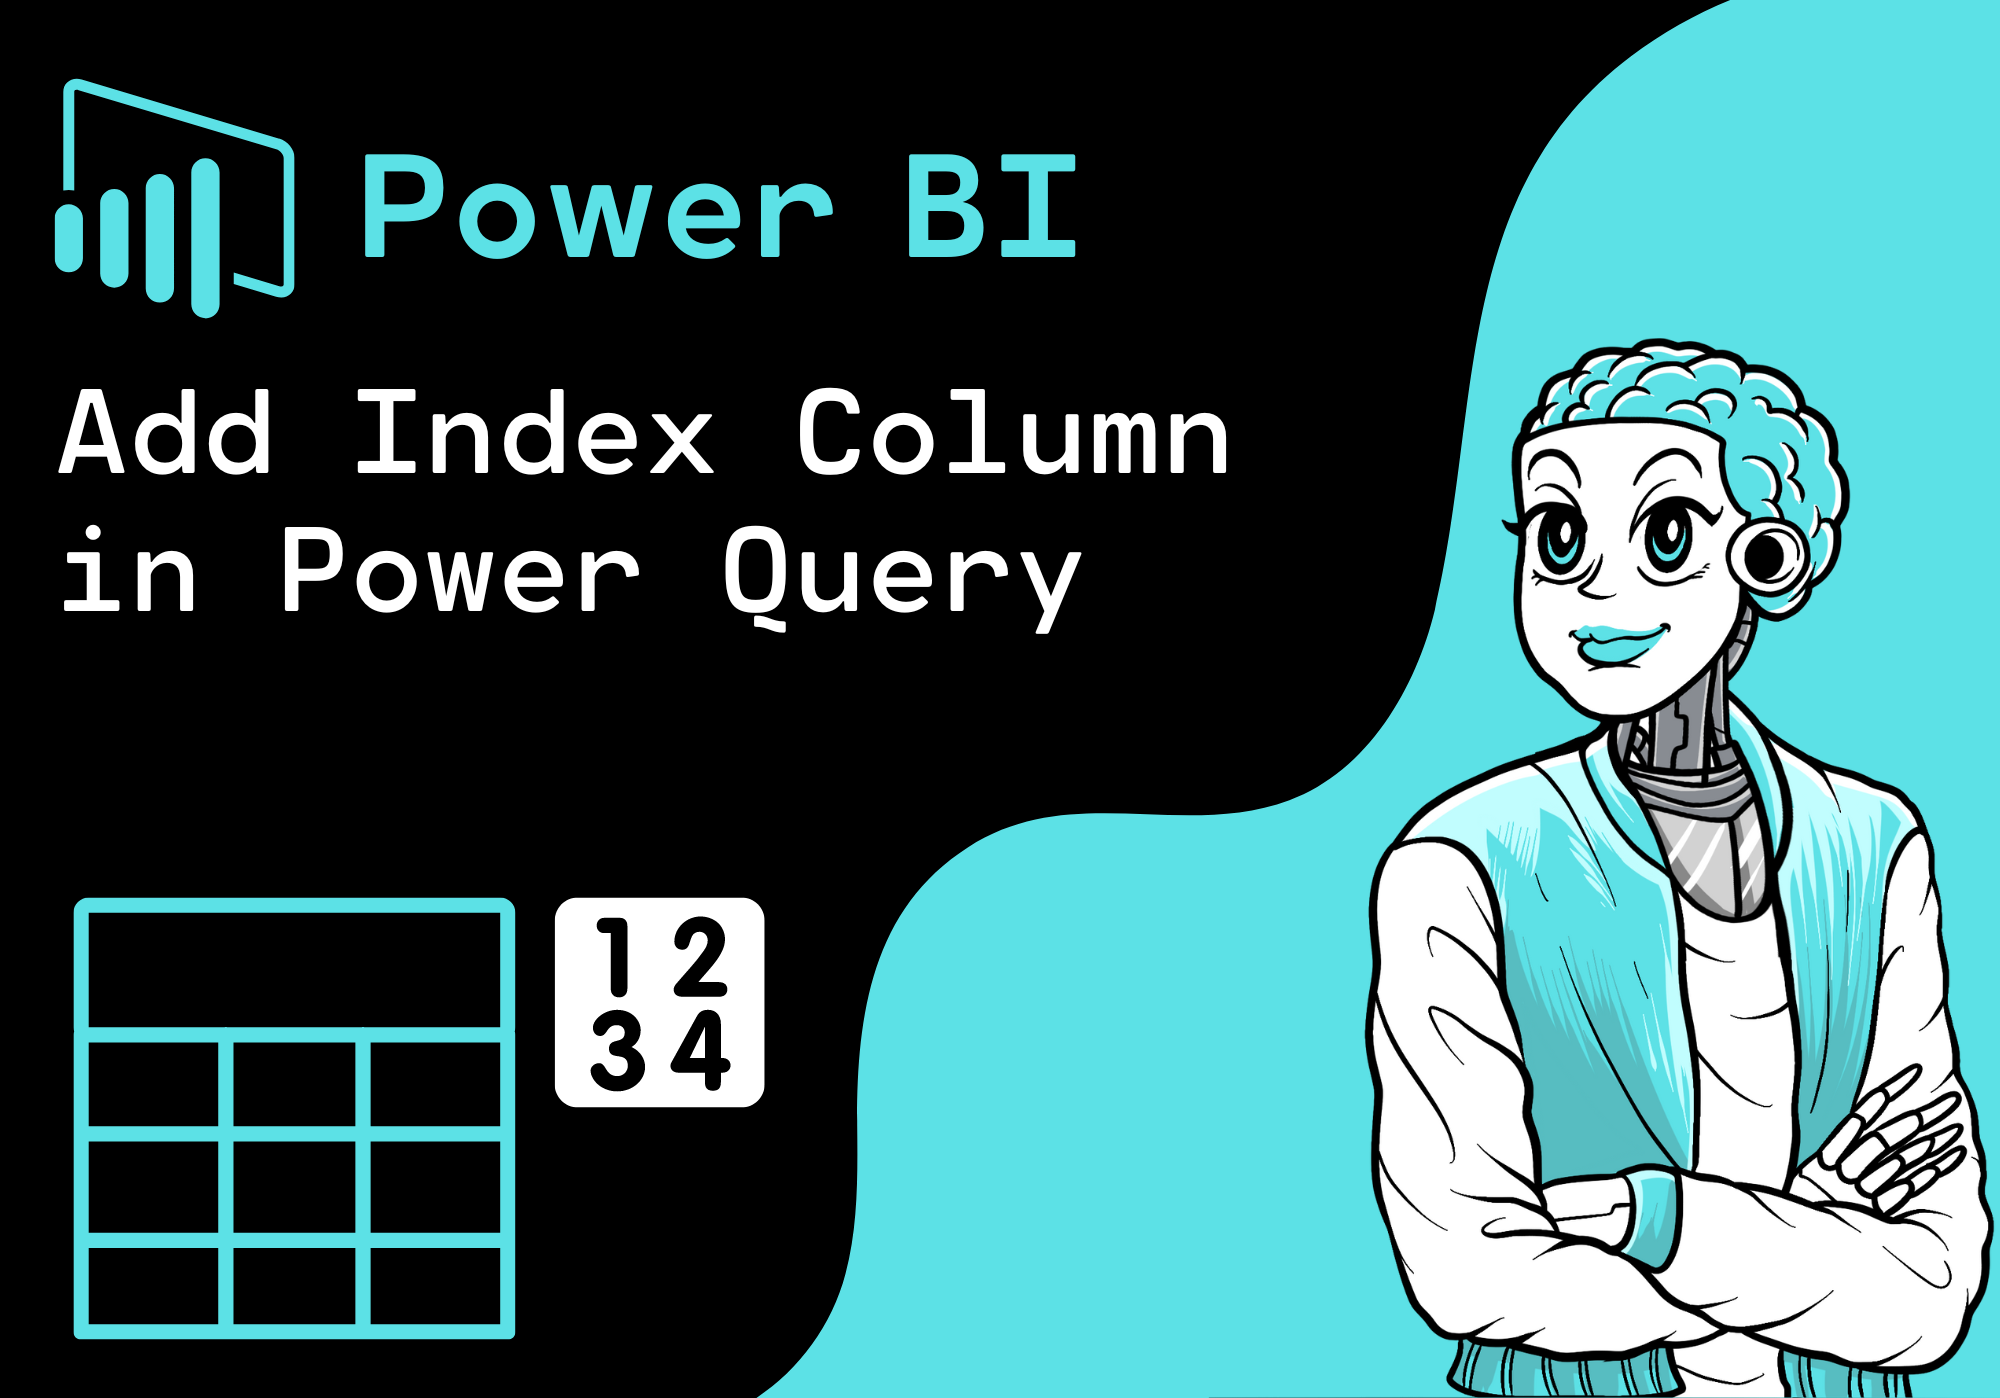 Power BI - Add Index Column in Power Query